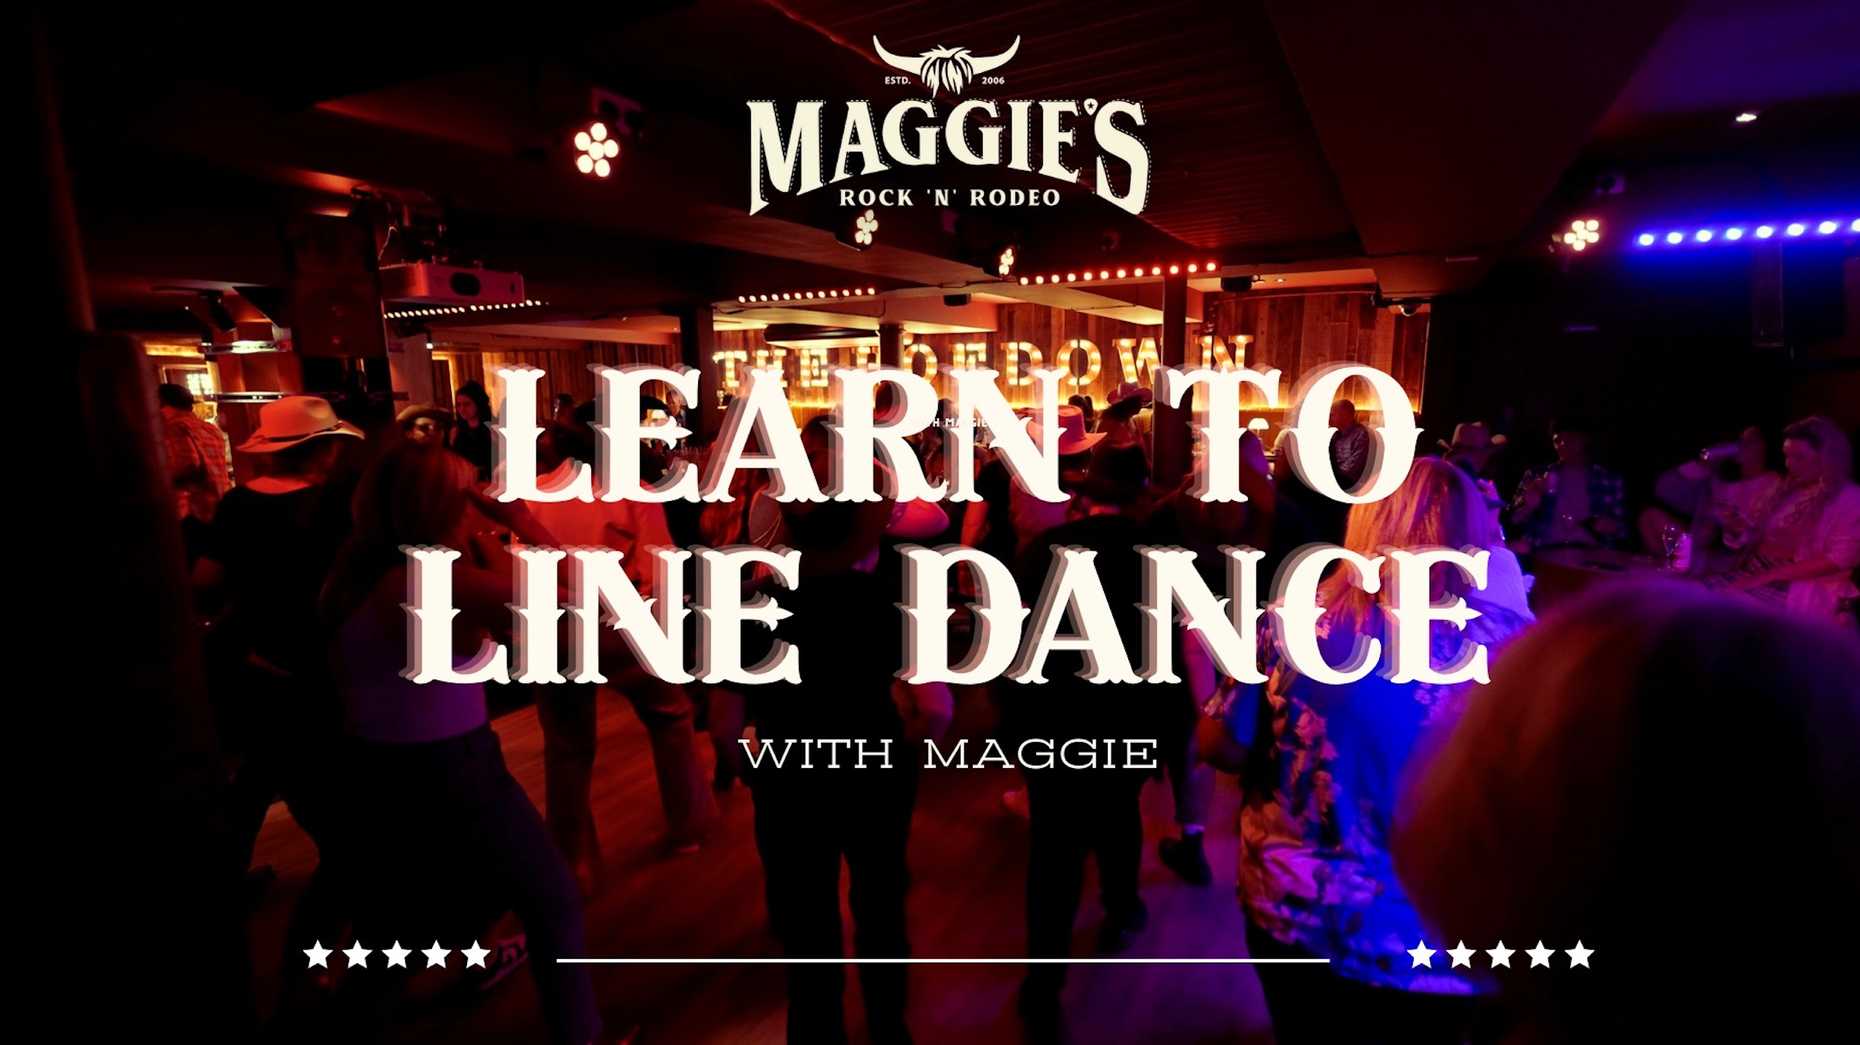 Line Dancing With Maggie - Line Dancing With Maggie